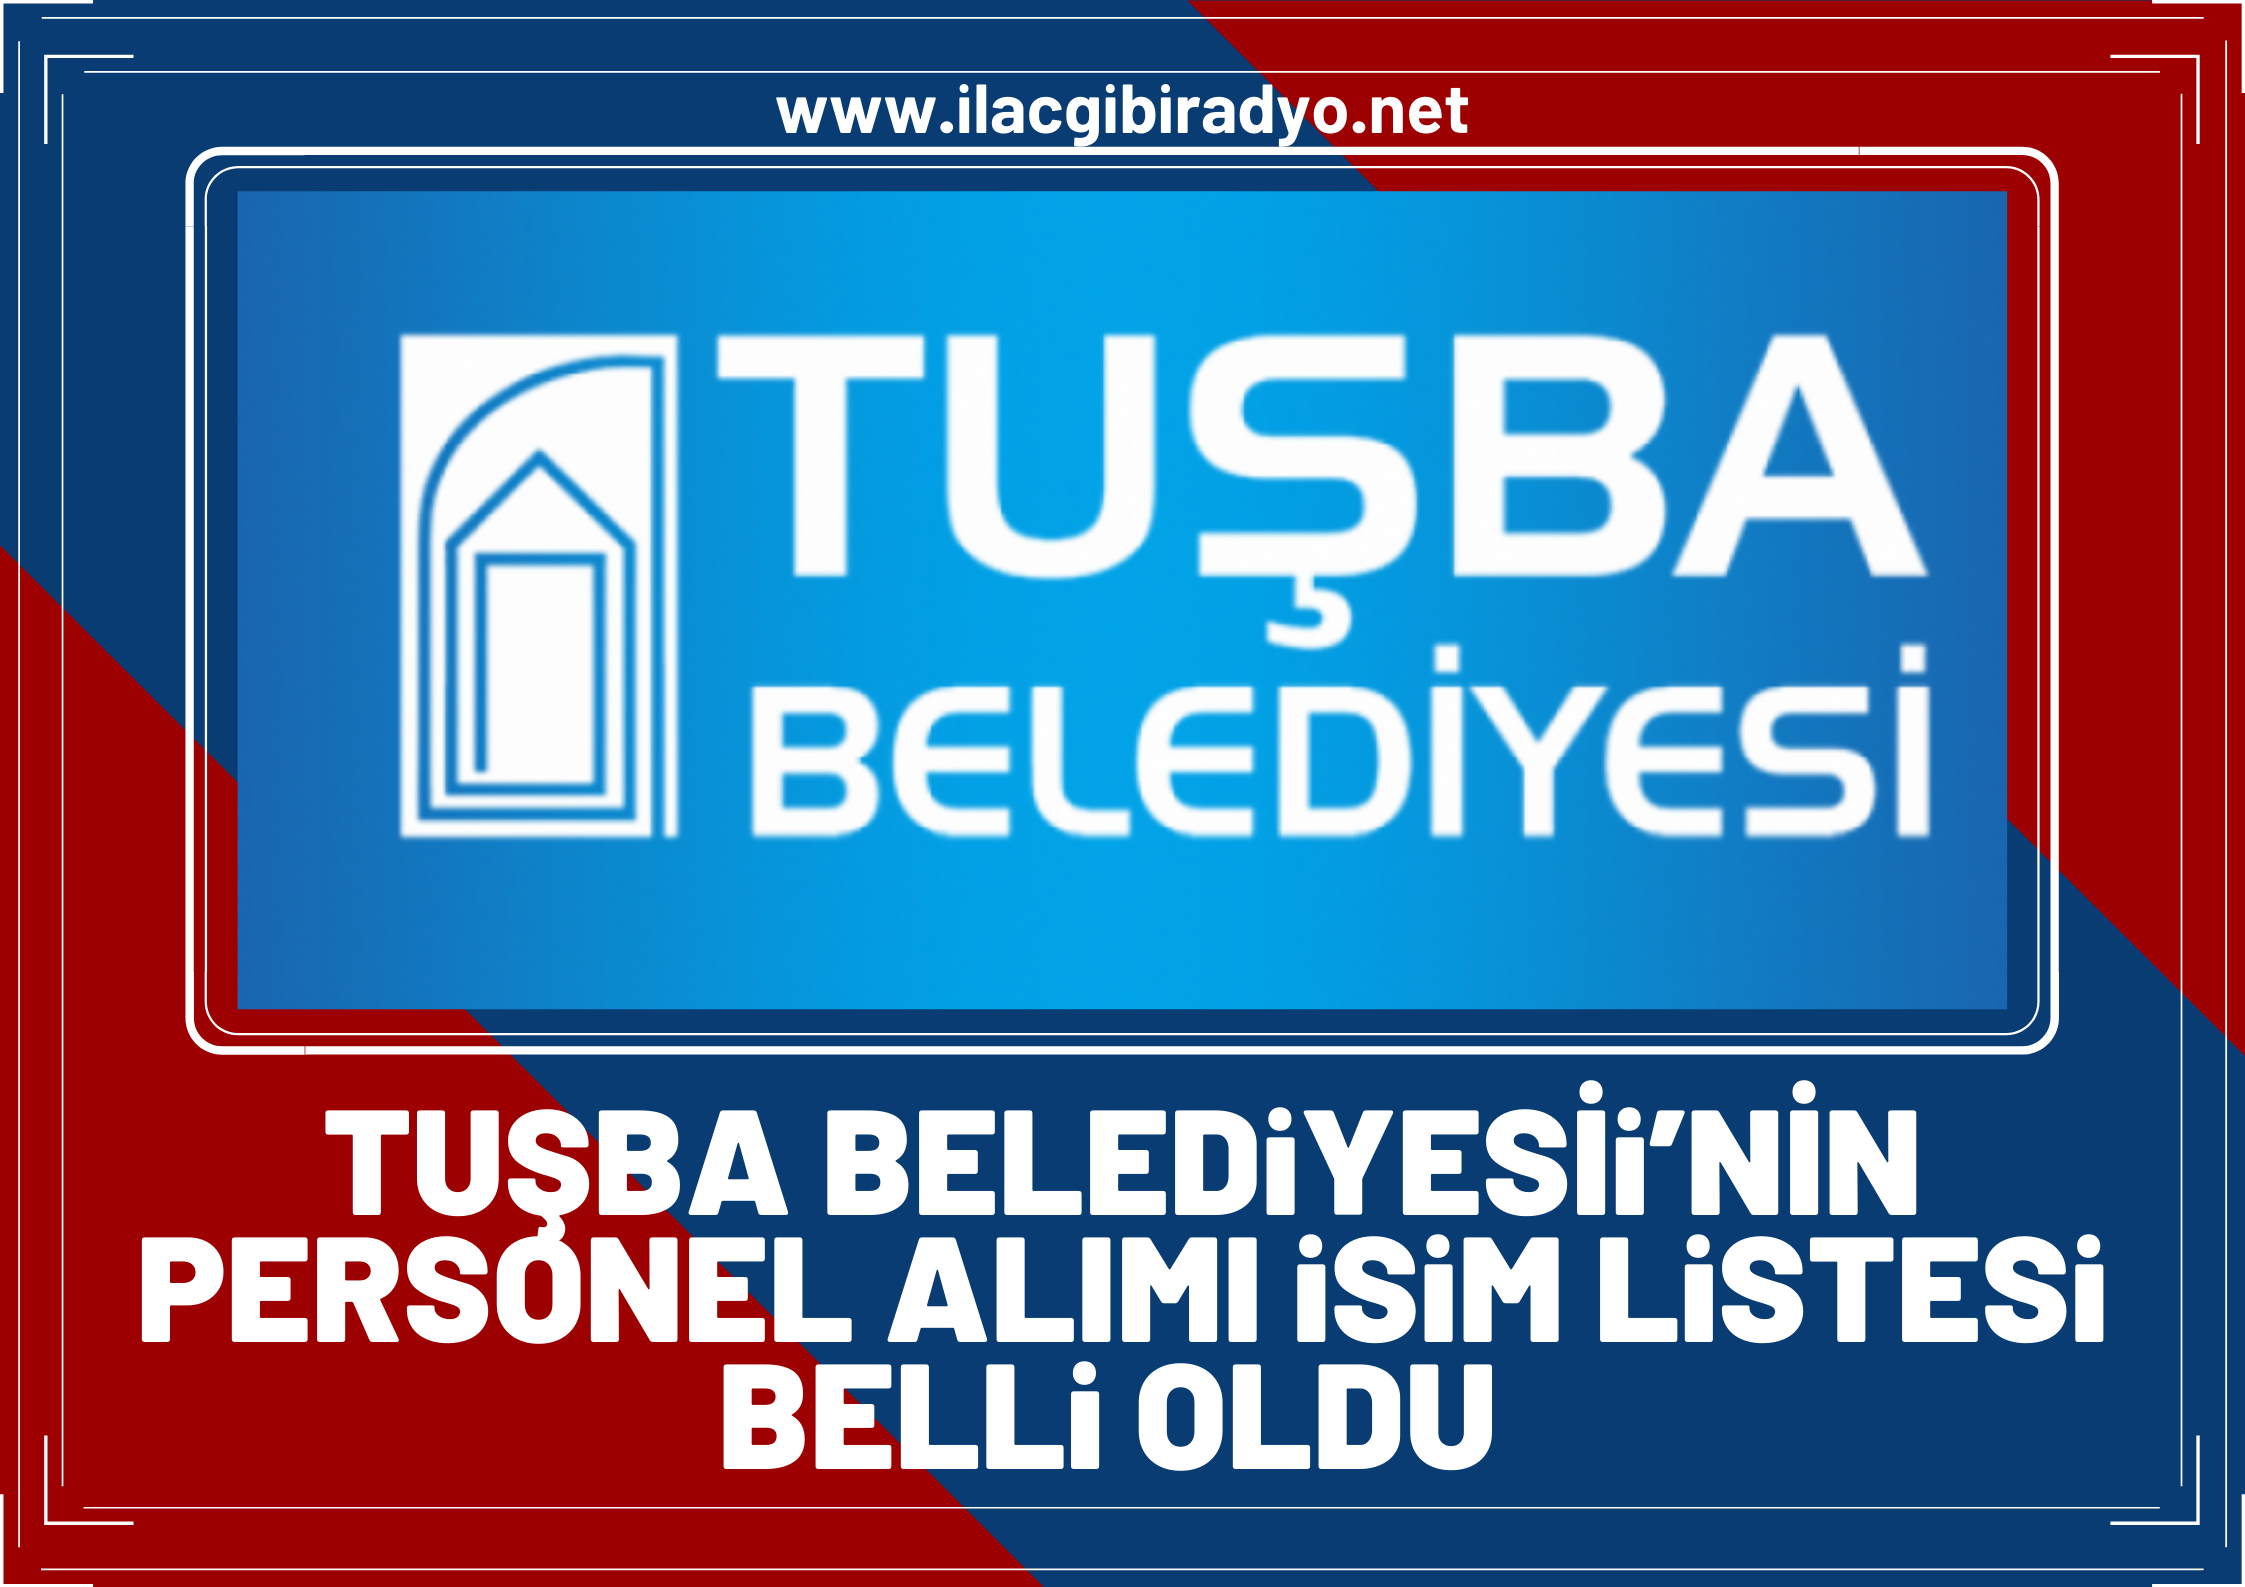 Tuşba Belediyesi'nin personel alımı isim listesi belli oldu!